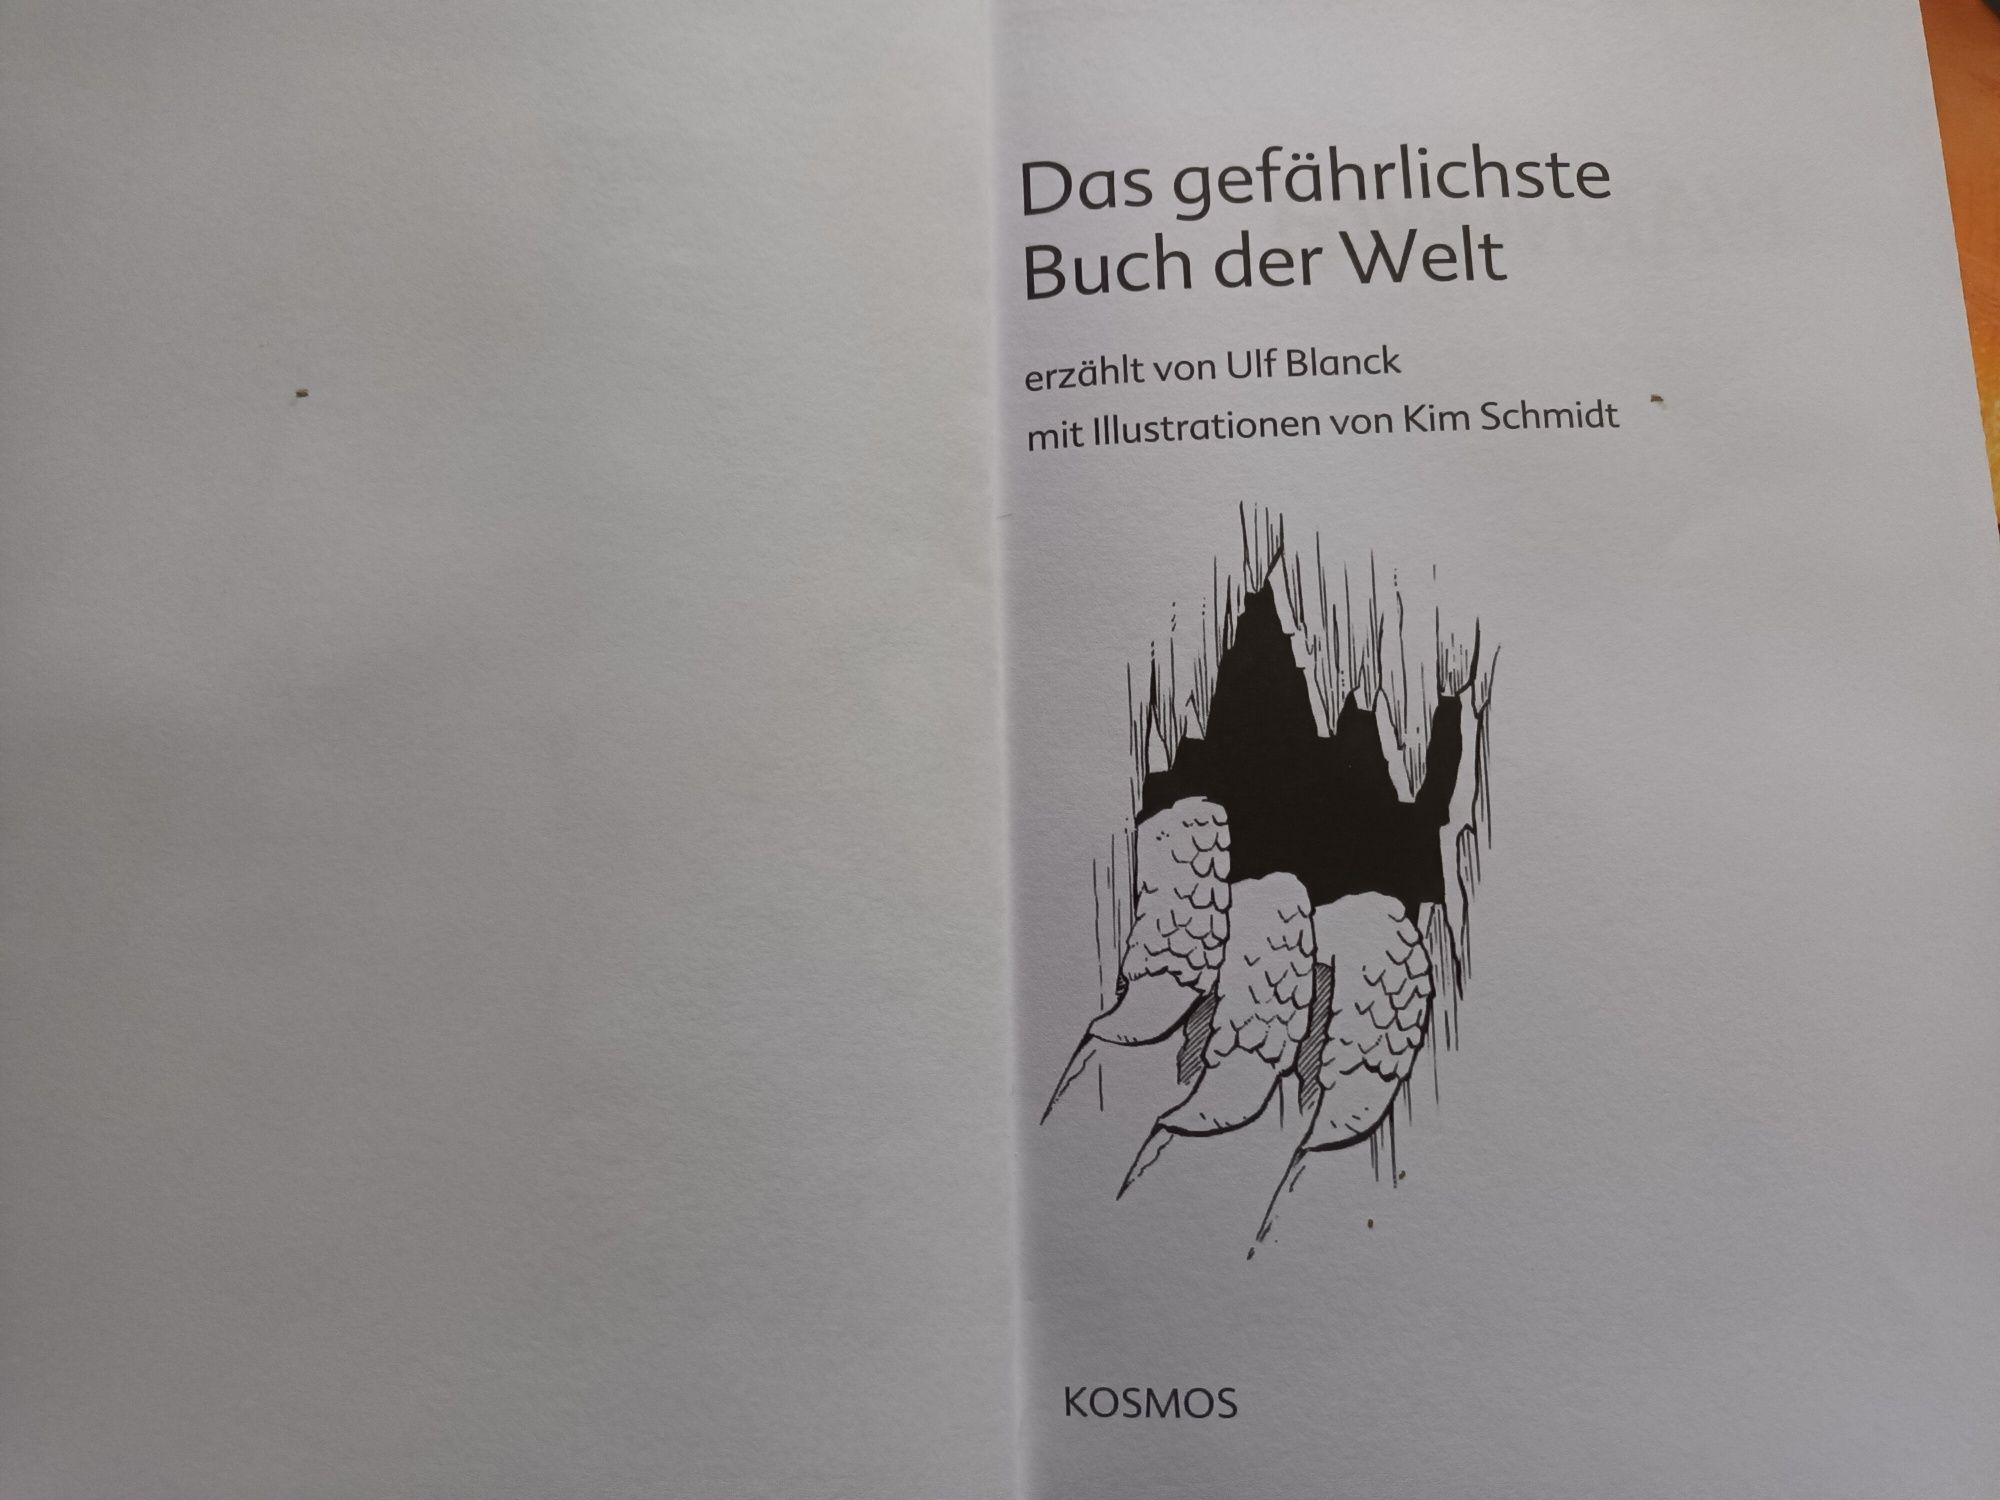 Die drei ??? Kids książka w j.niemieckim